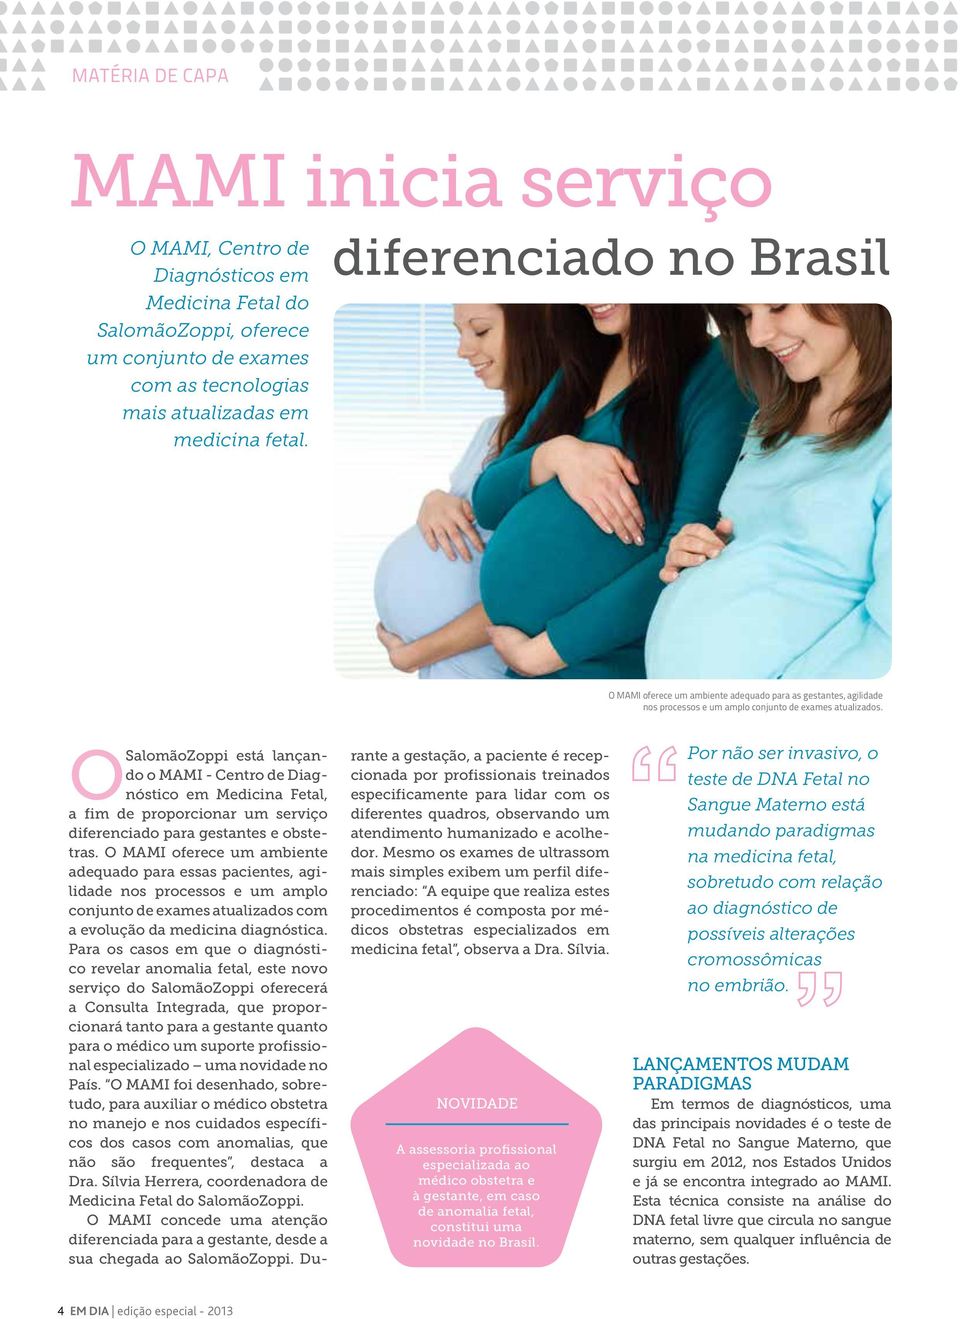 O SalomãoZoppi está lançando o MAMI - Centro de Diagnóstico em Medicina Fetal, a fim de proporcionar um serviço diferenciado para gestantes e obstetras.